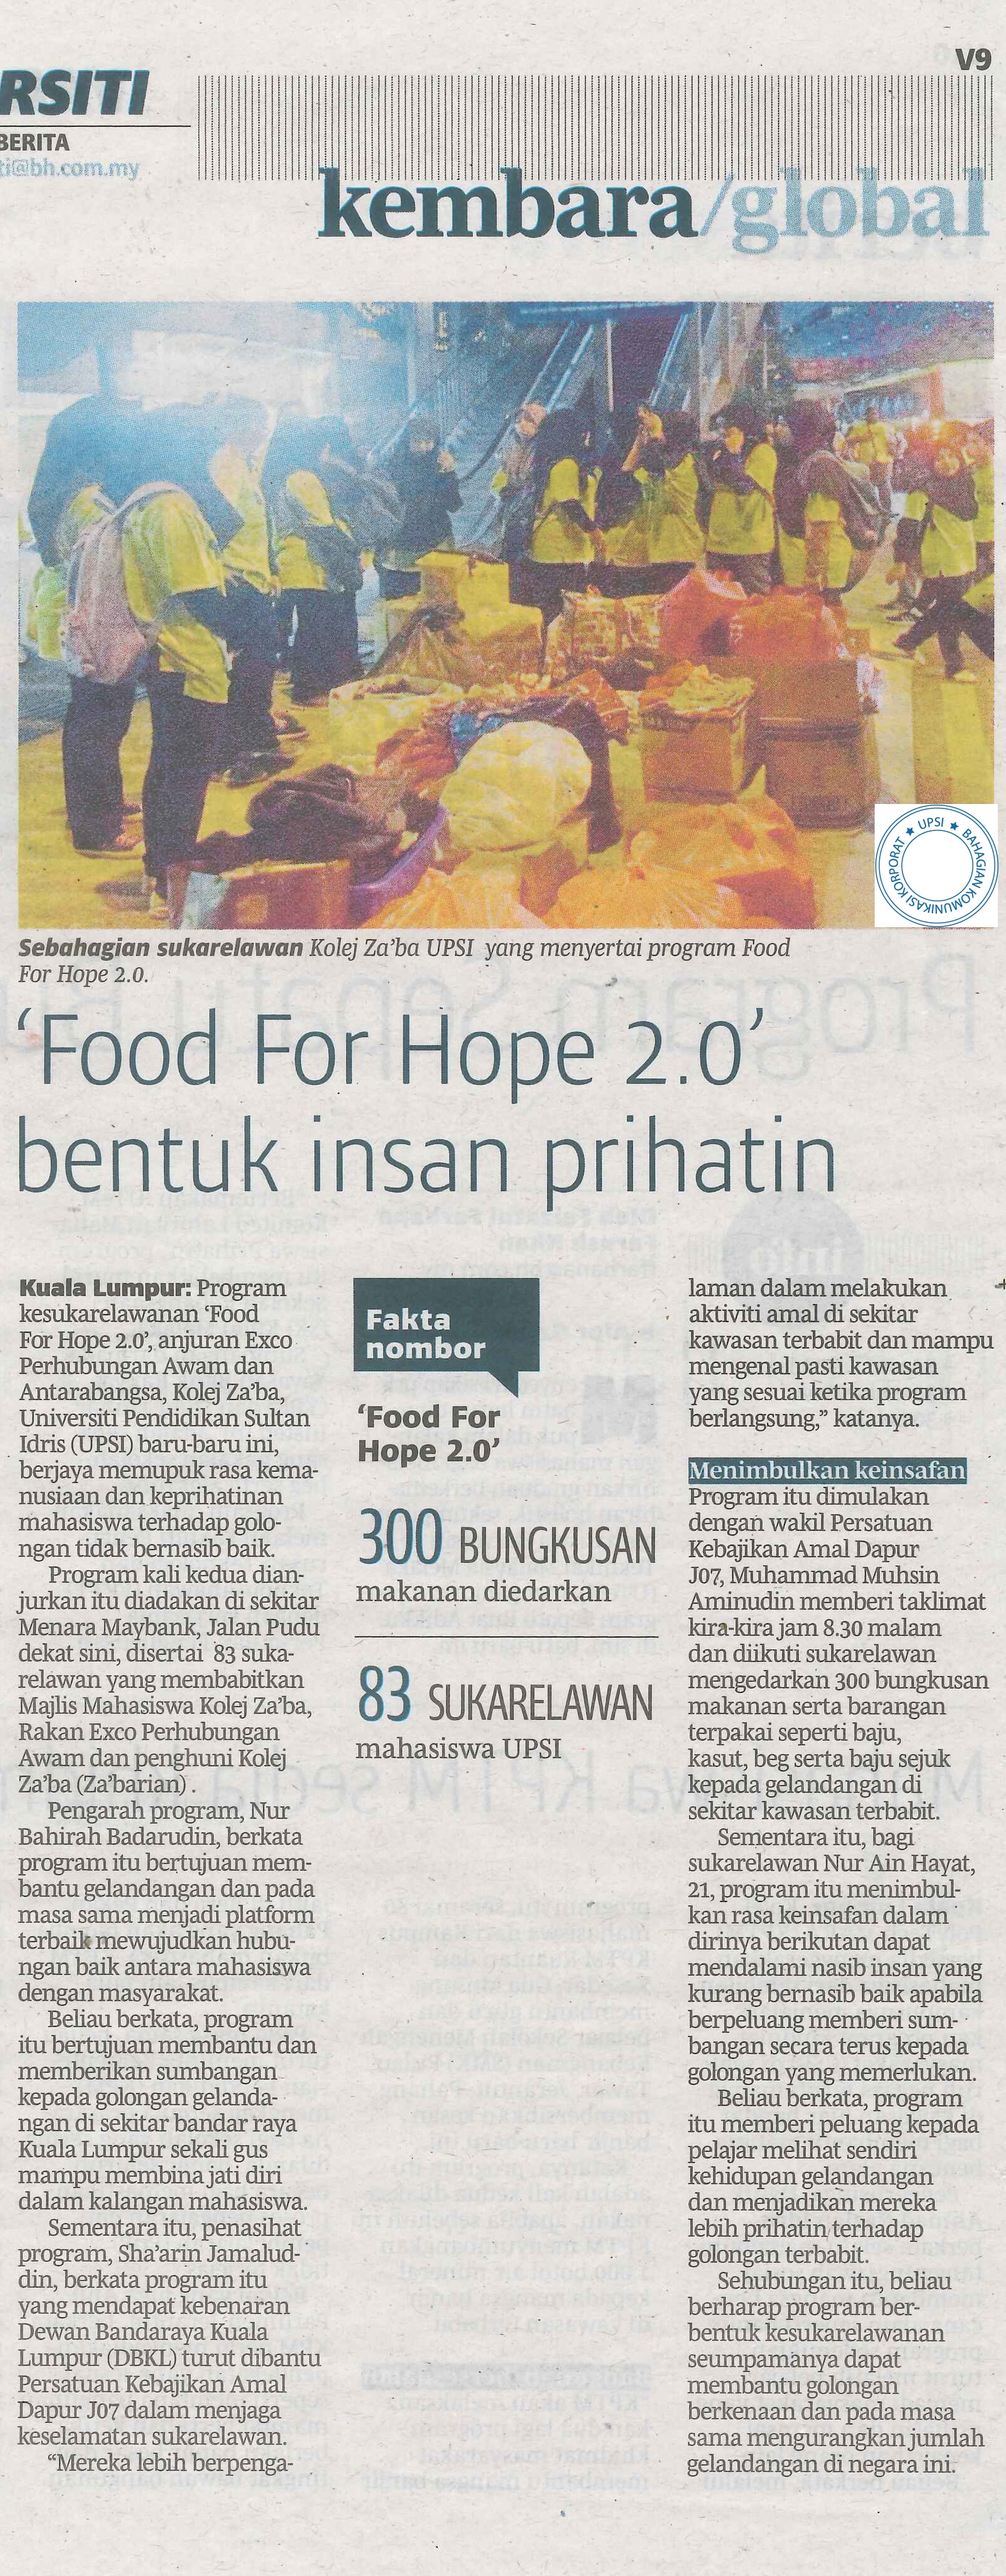 BH 16 FEB FOOD FOR HOPE 2.0 BENTUK INSAN PRIHATIN